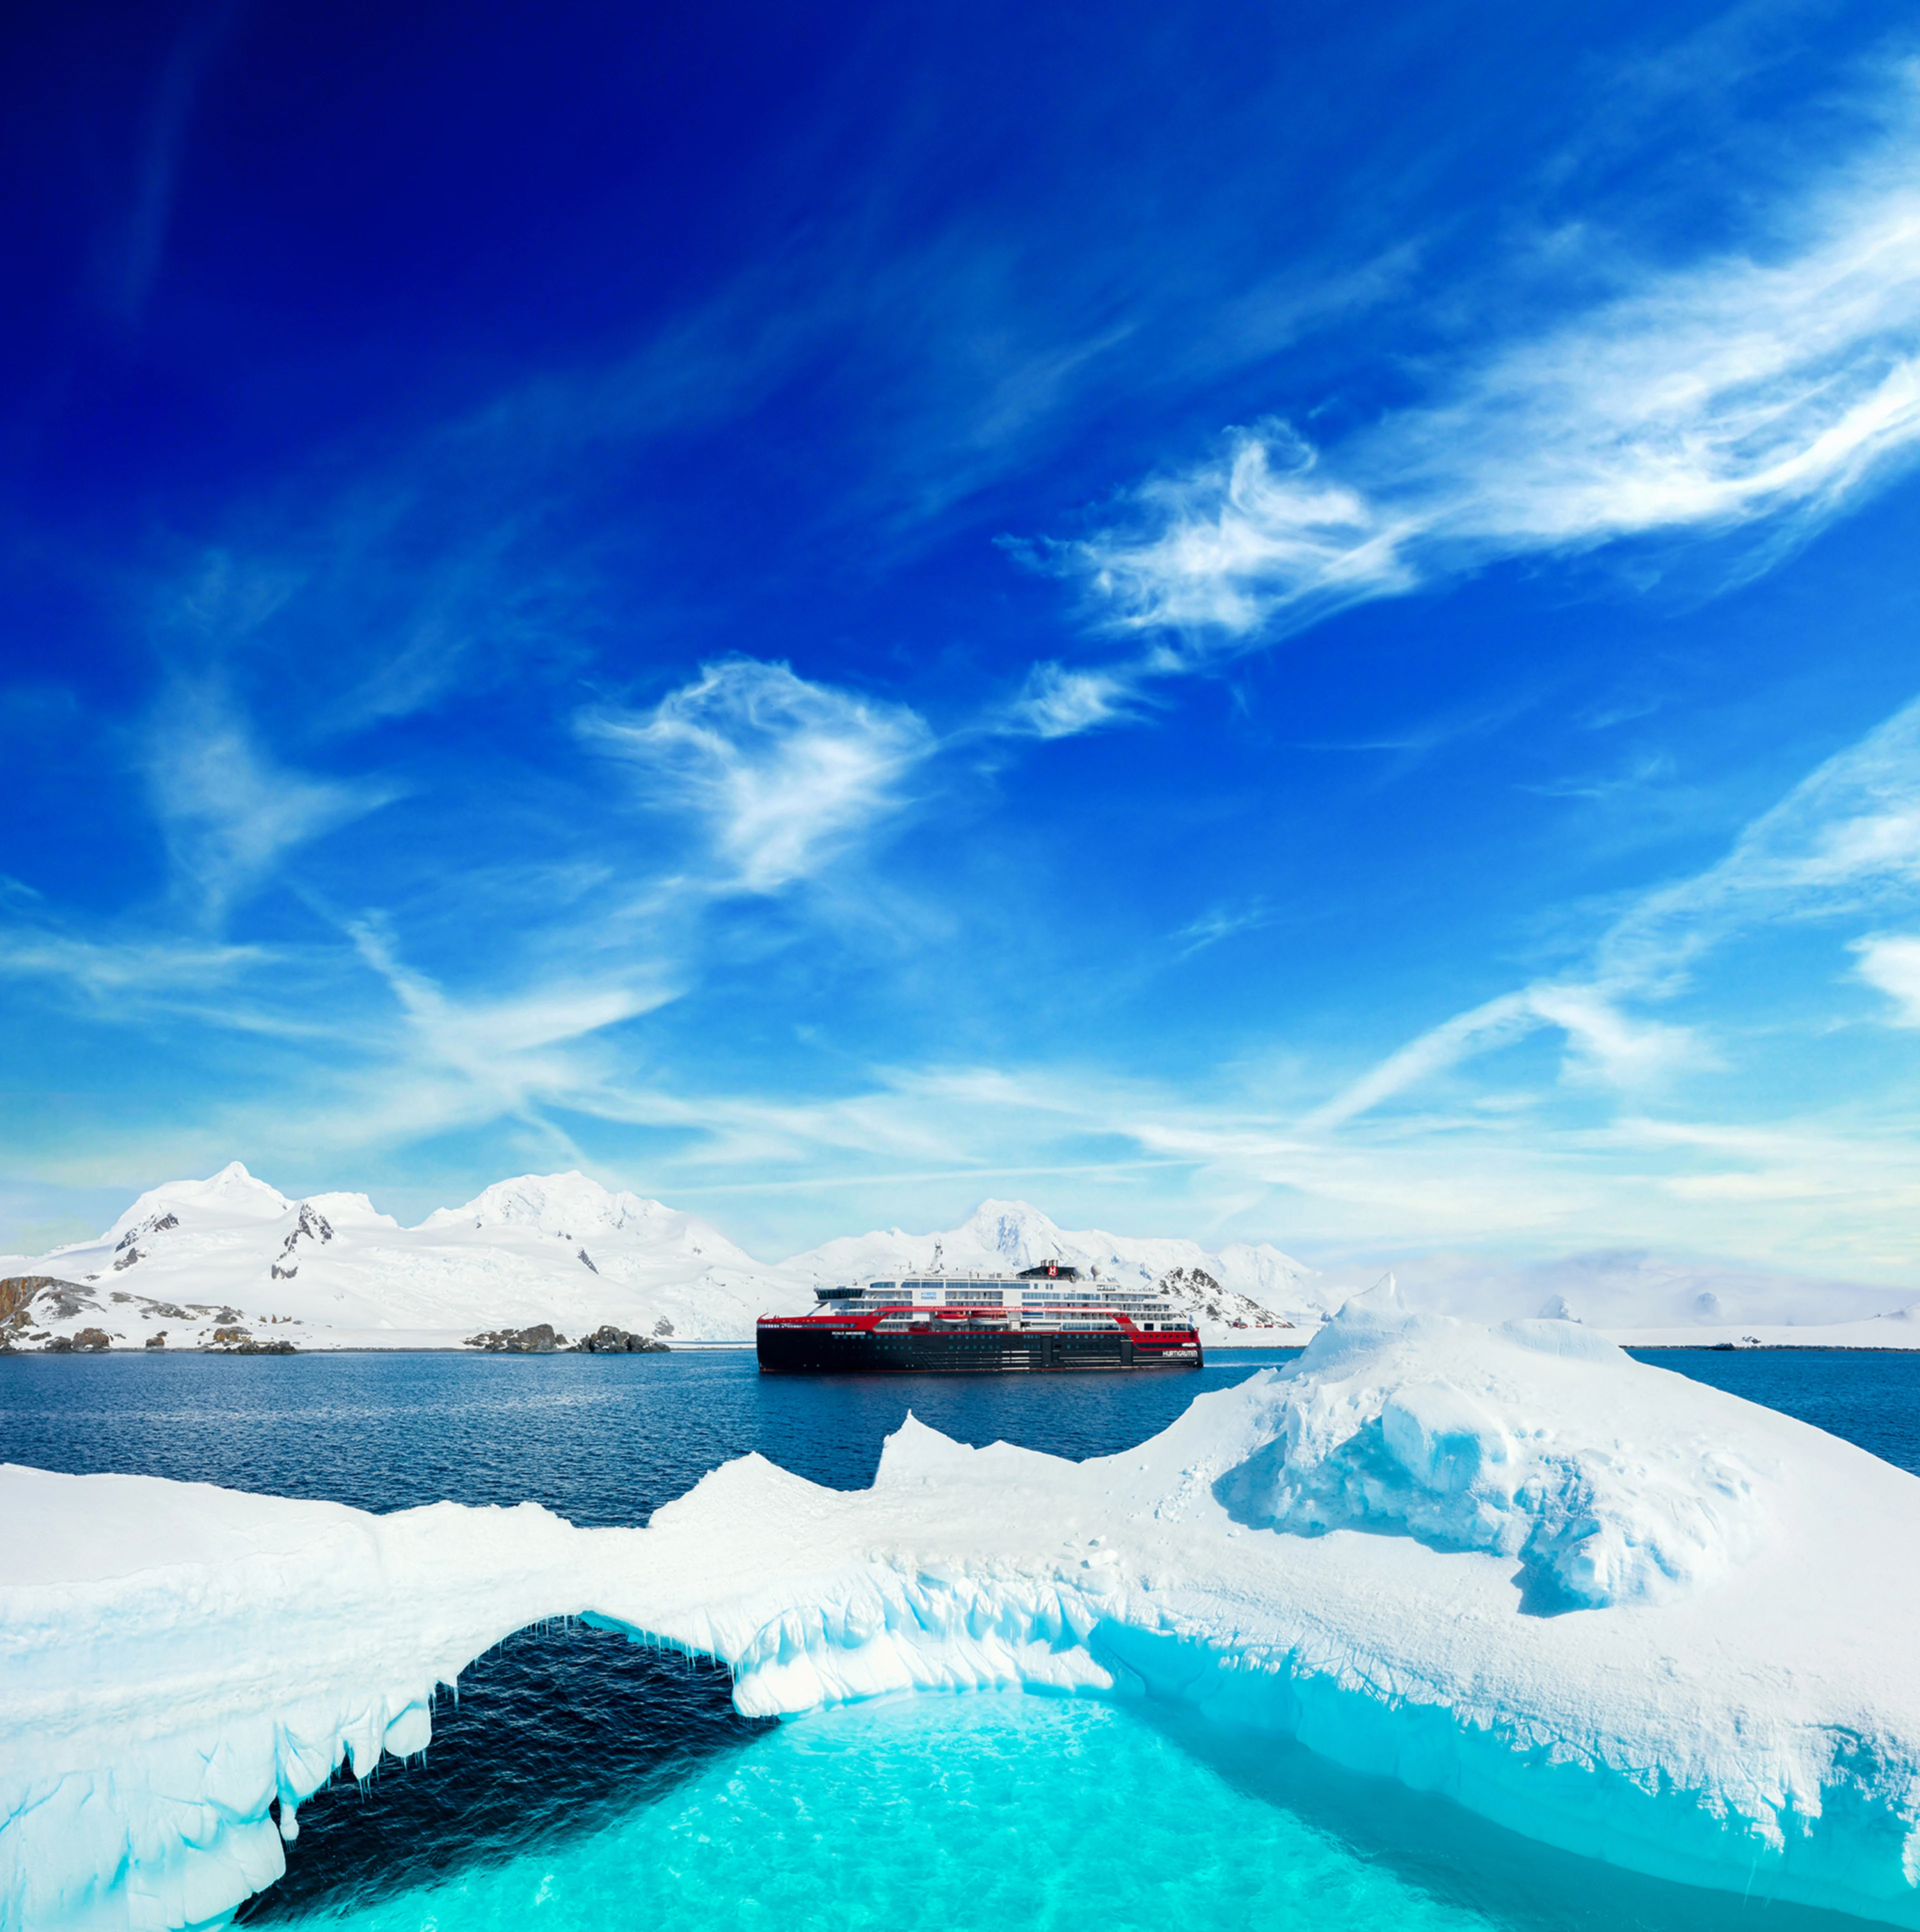 MS-Roald-Amundsen-Antarktis-HGR-142135- Foto_Dan_Avila_1920px